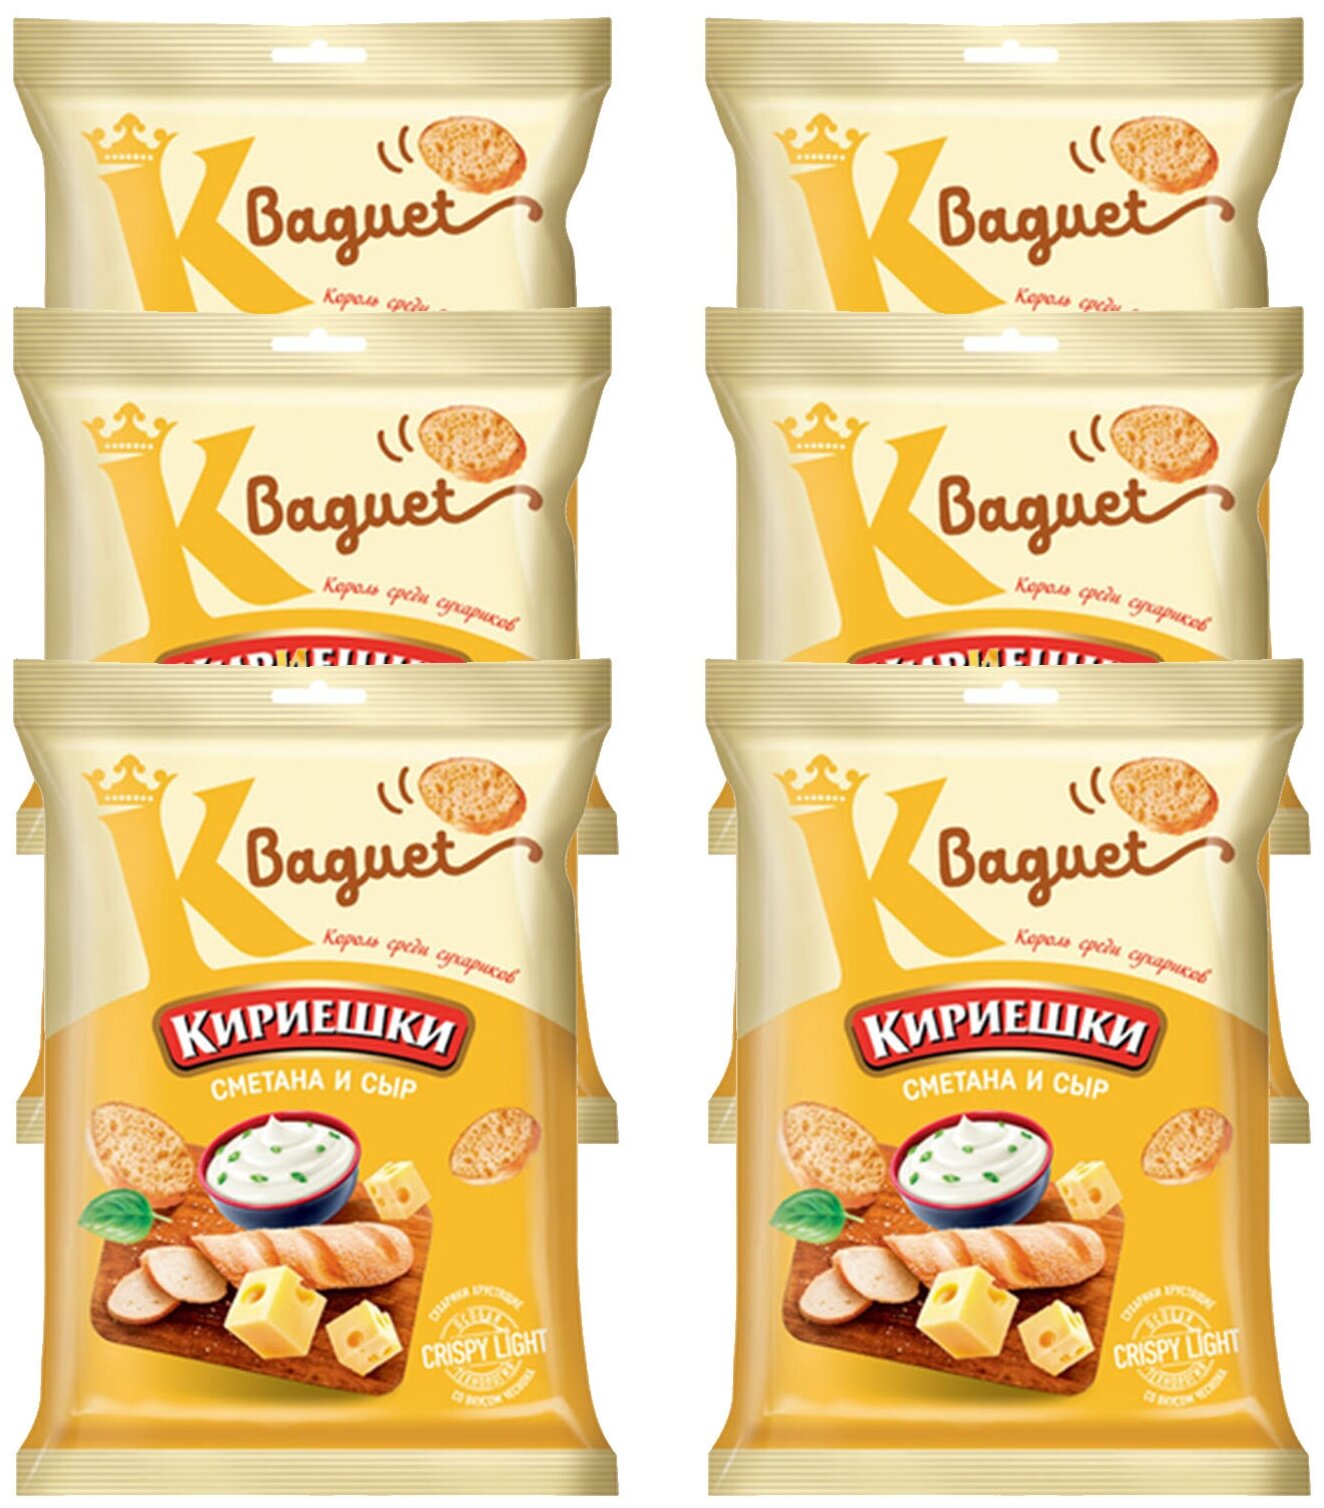 «Кириешки Baguet», сухарики со вкусом сметаны и сыра, 6 пачек по 50 г